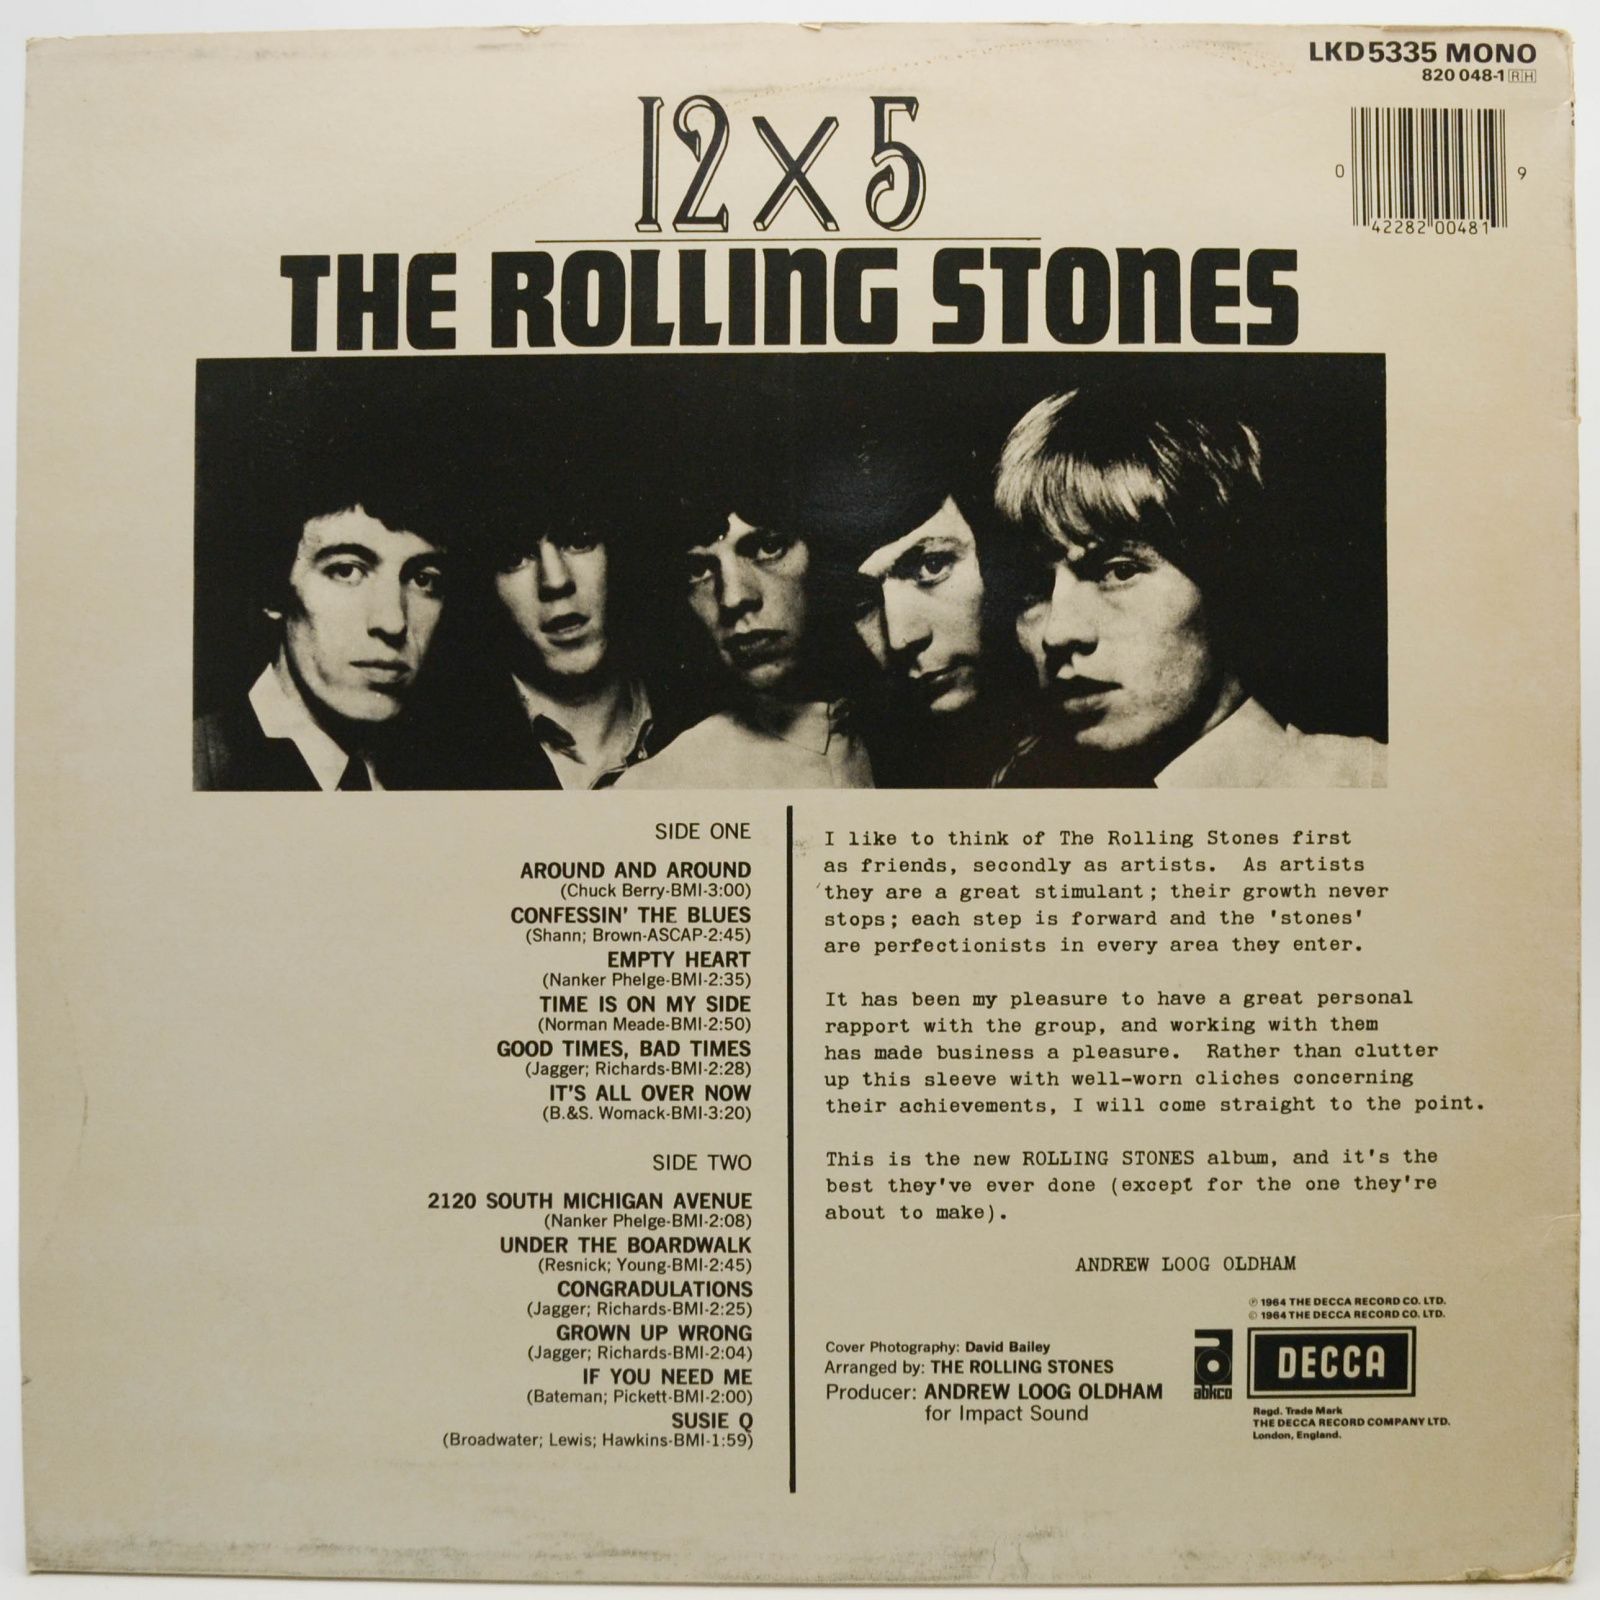 Rolling Stones — 12 X 5 (UK), 1964